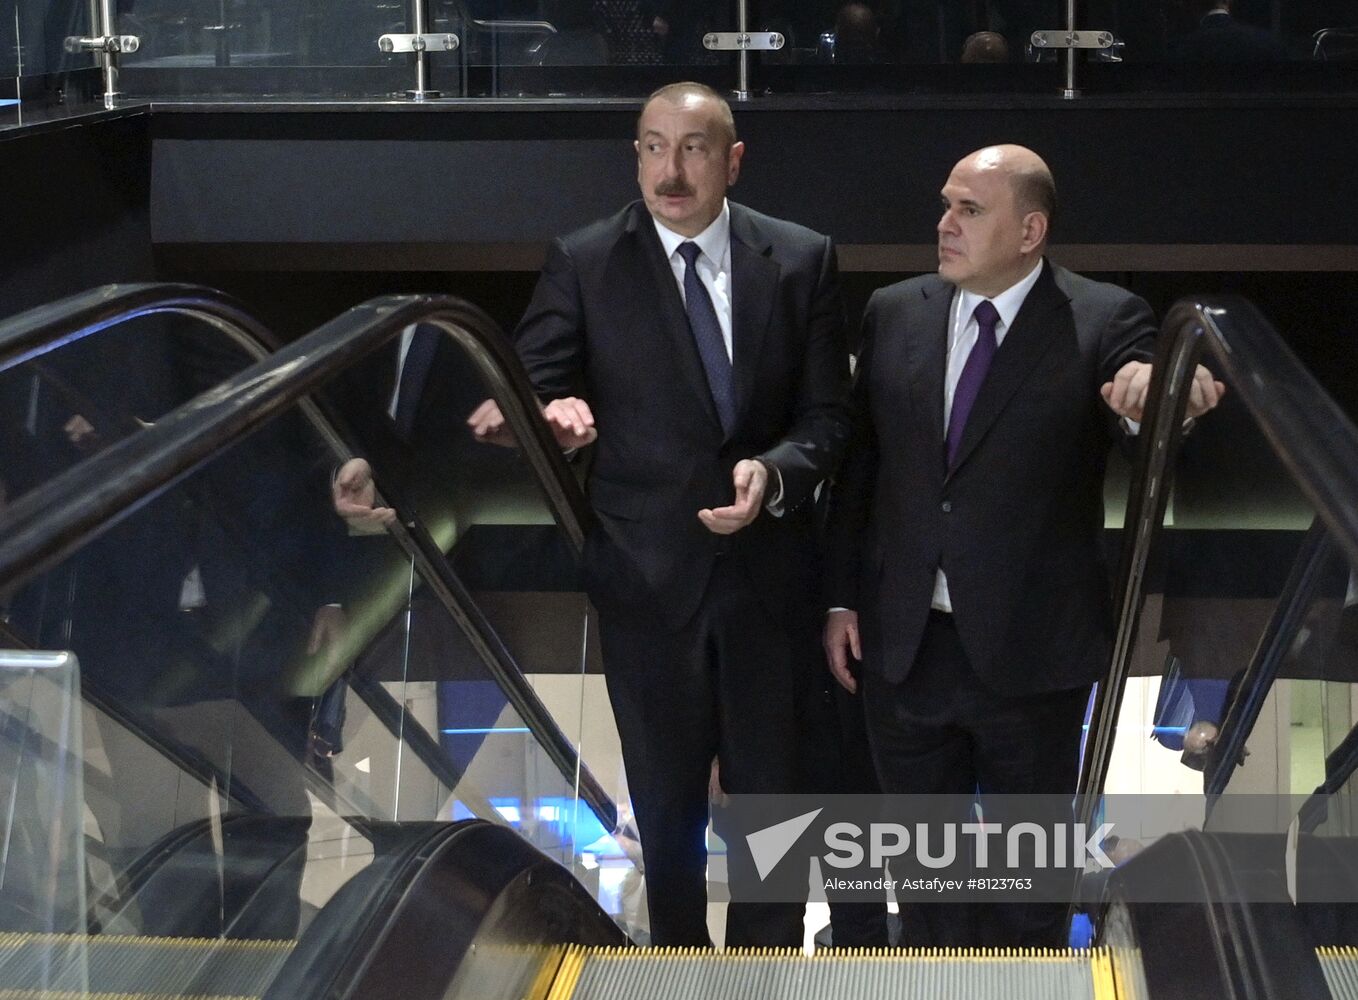 Russia Mishustin Azerbaijan